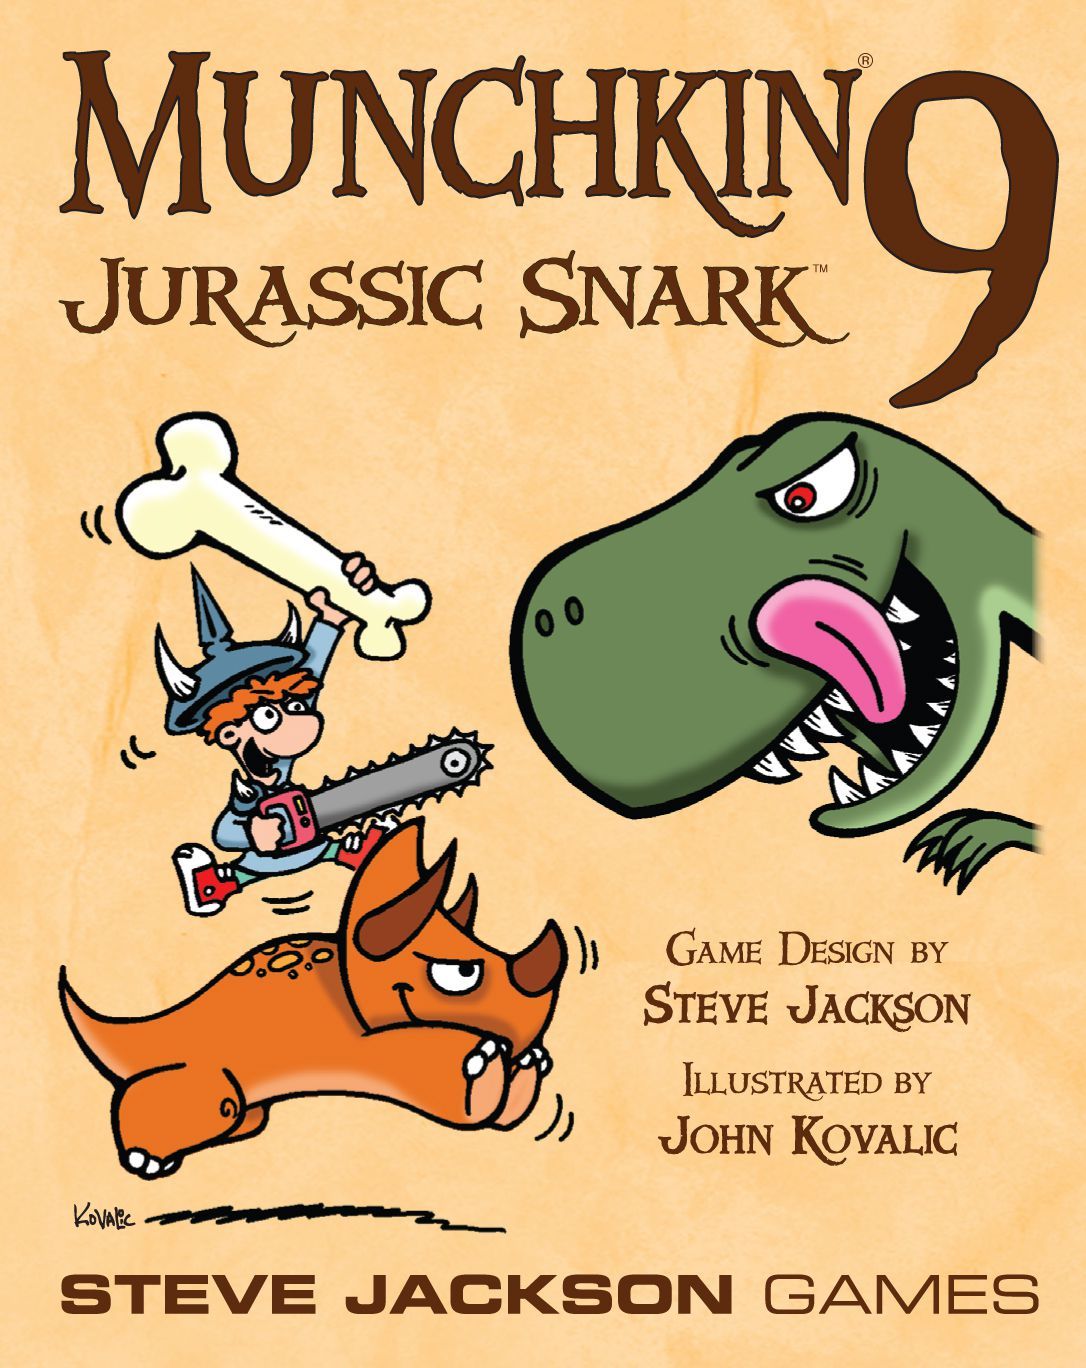 Steve Jackson Games Munchkin 9: Jurassic Snark